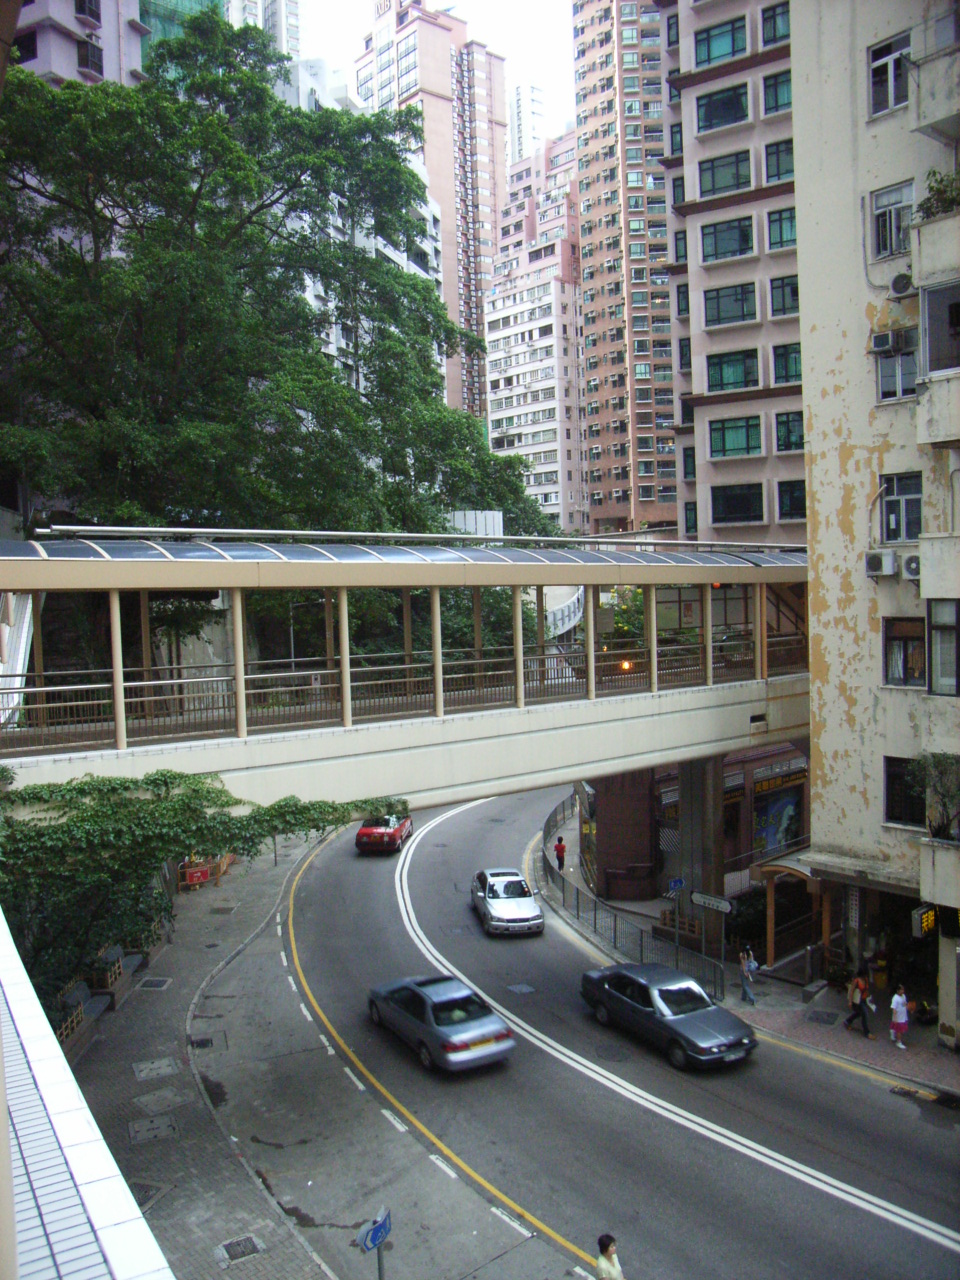 Robinson Road Hong Kong Wikipedia